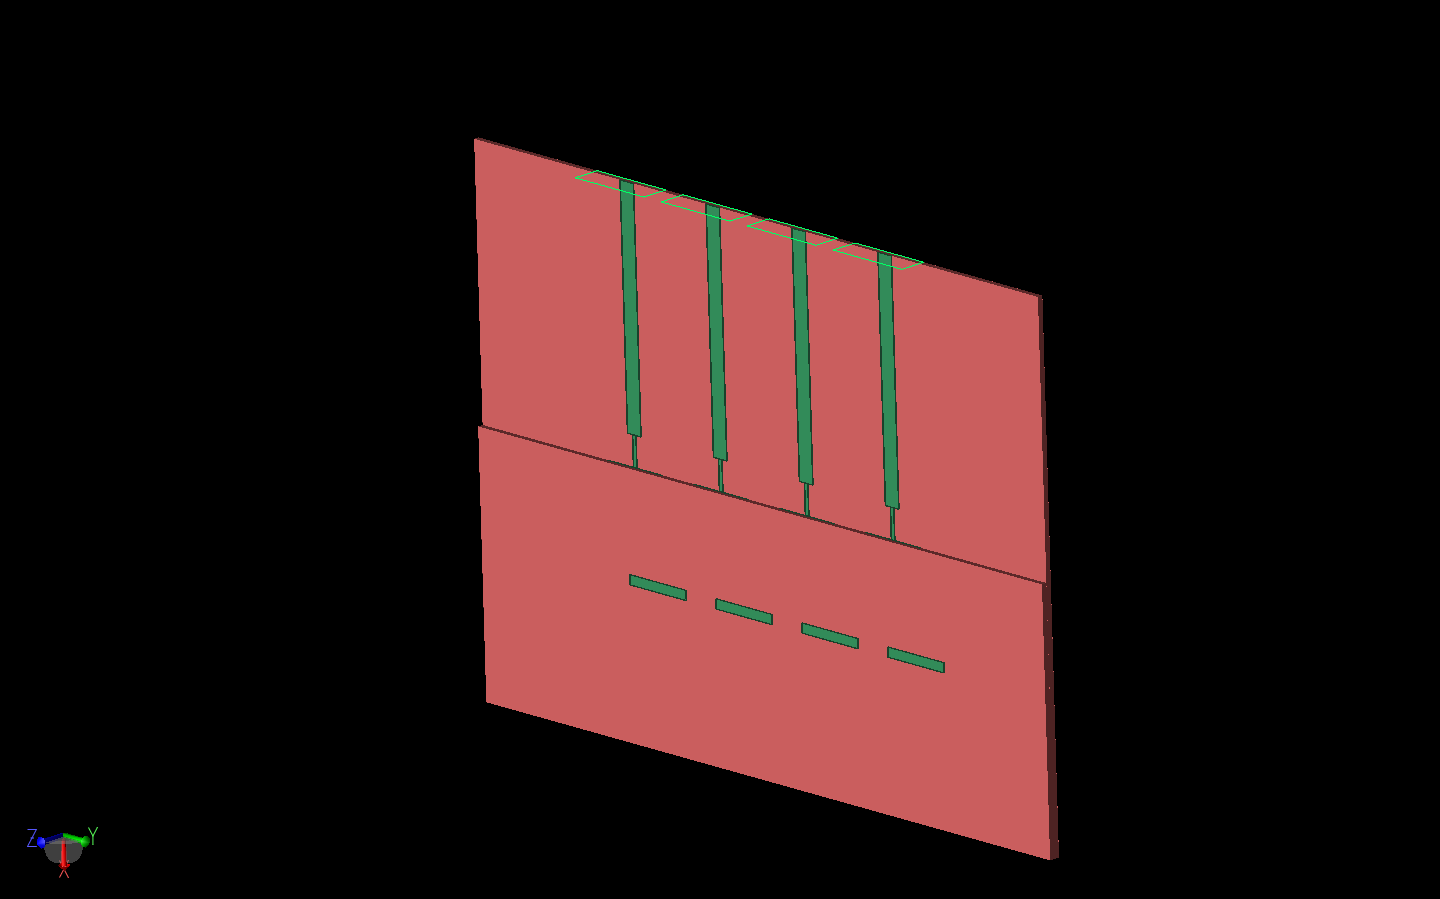 図2: アンテナ・アレイを3次元で示し、上部基板層の端がパッチの上に見えている。アレイの上部には4つの導波管給電ポートが見える。